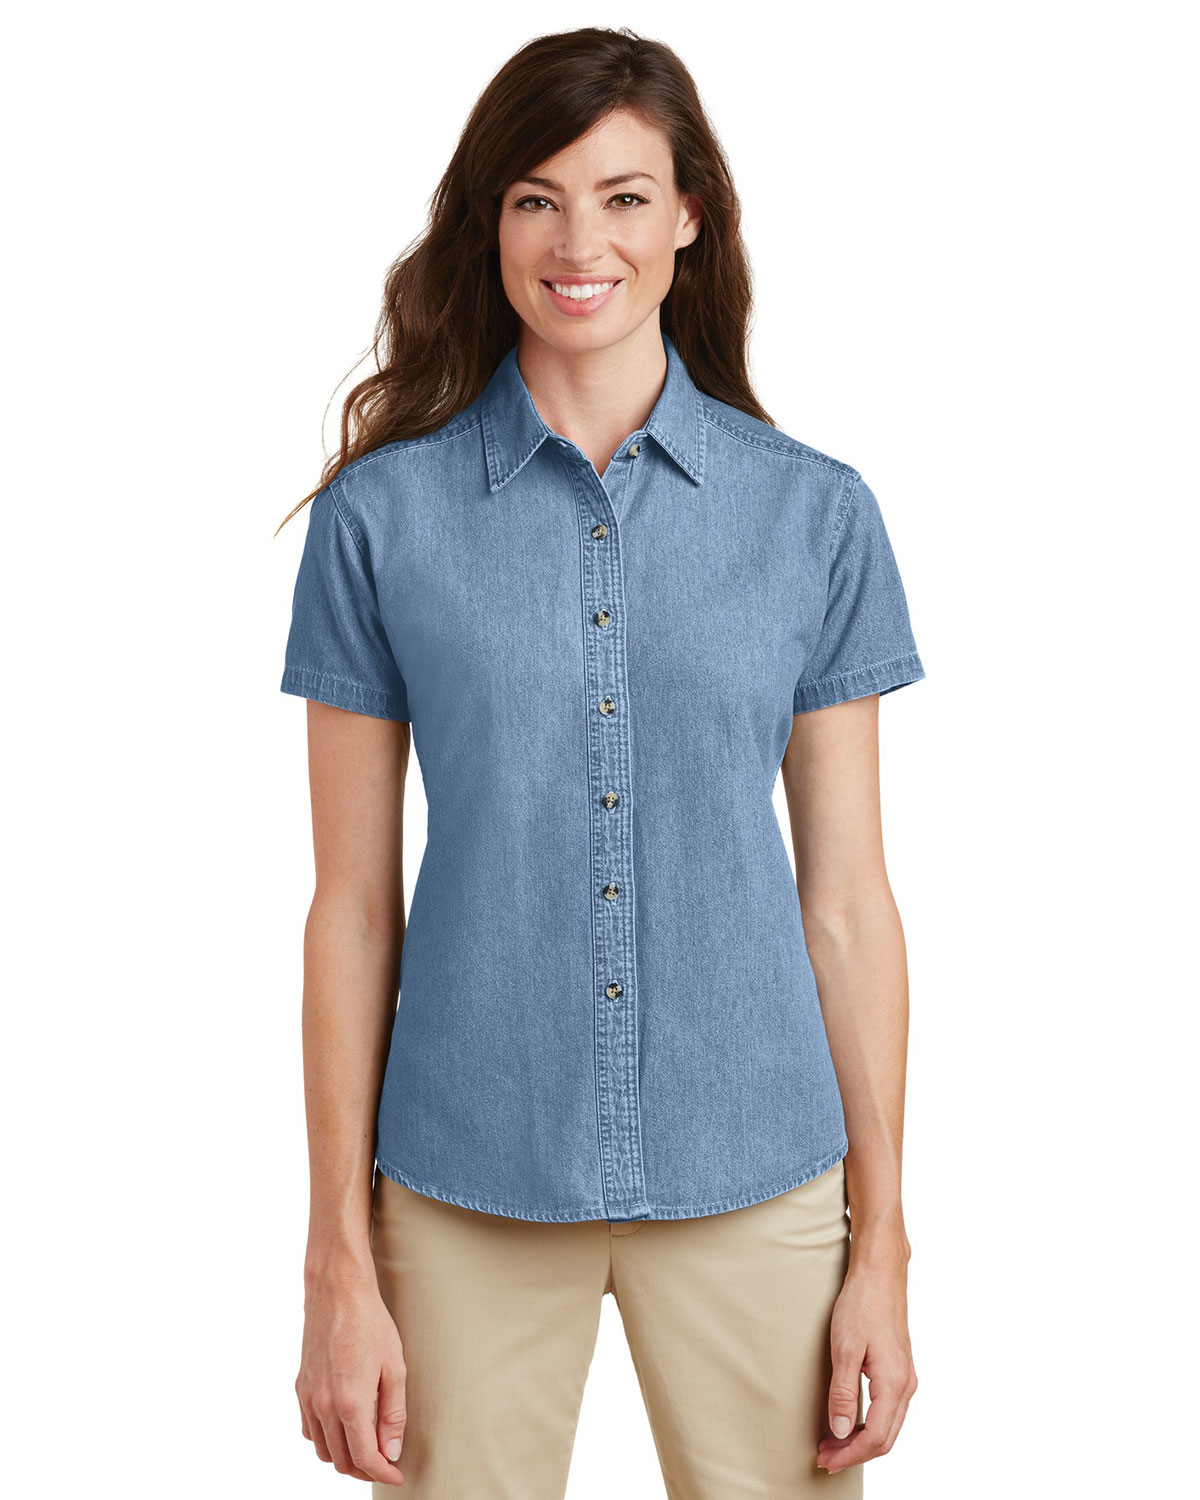 Port & Company LSP11 Women Short-Sleeve Value Denim Shirt at Apparelstation